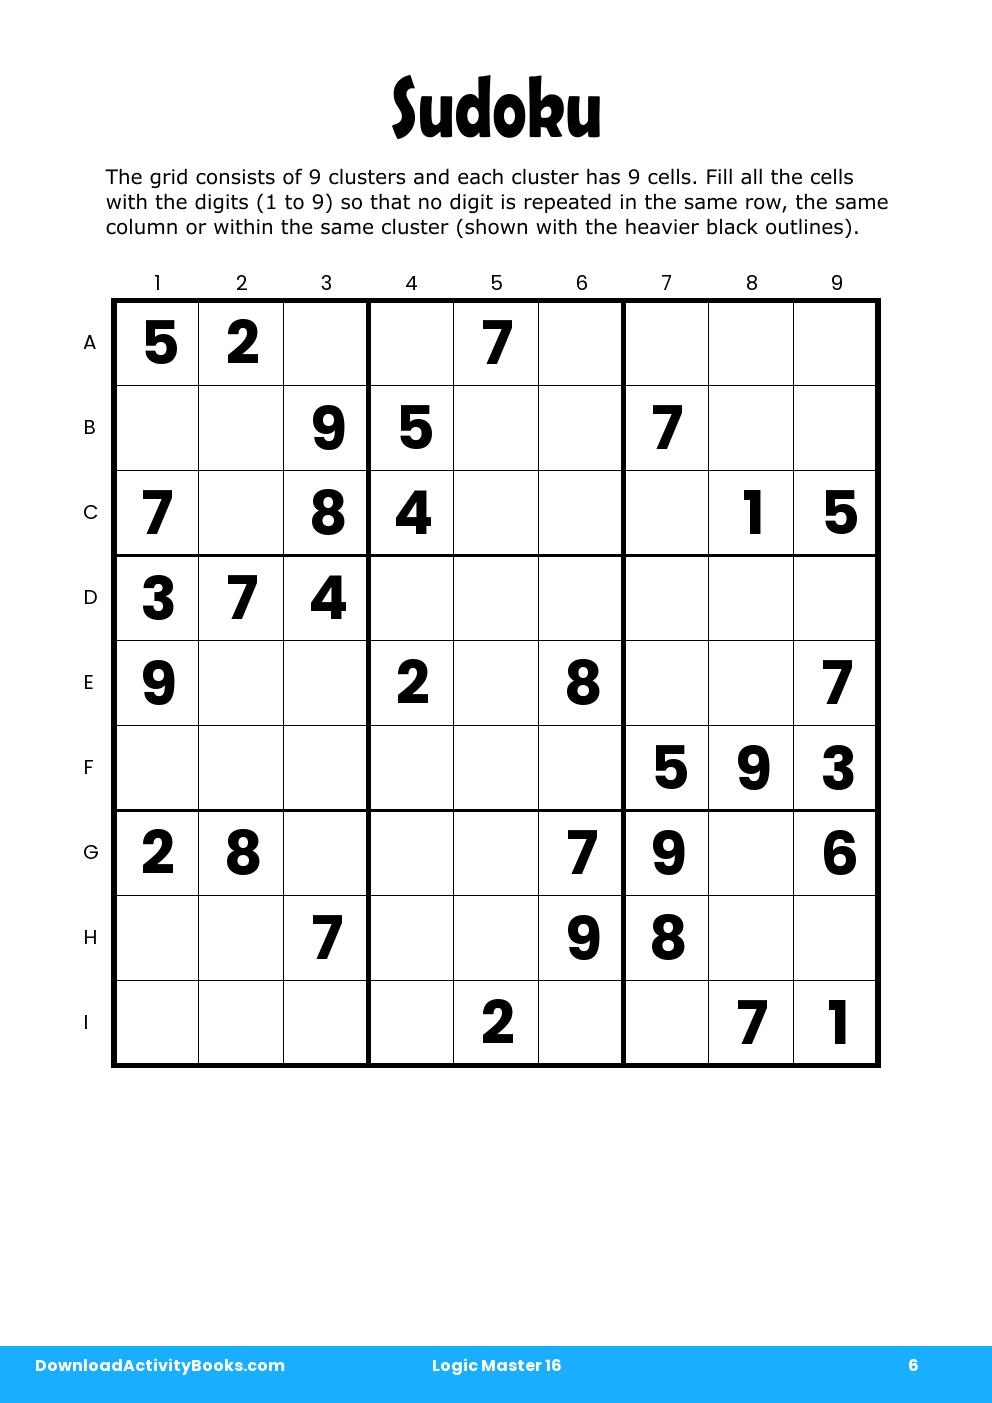 Sudoku in Logic Master 16